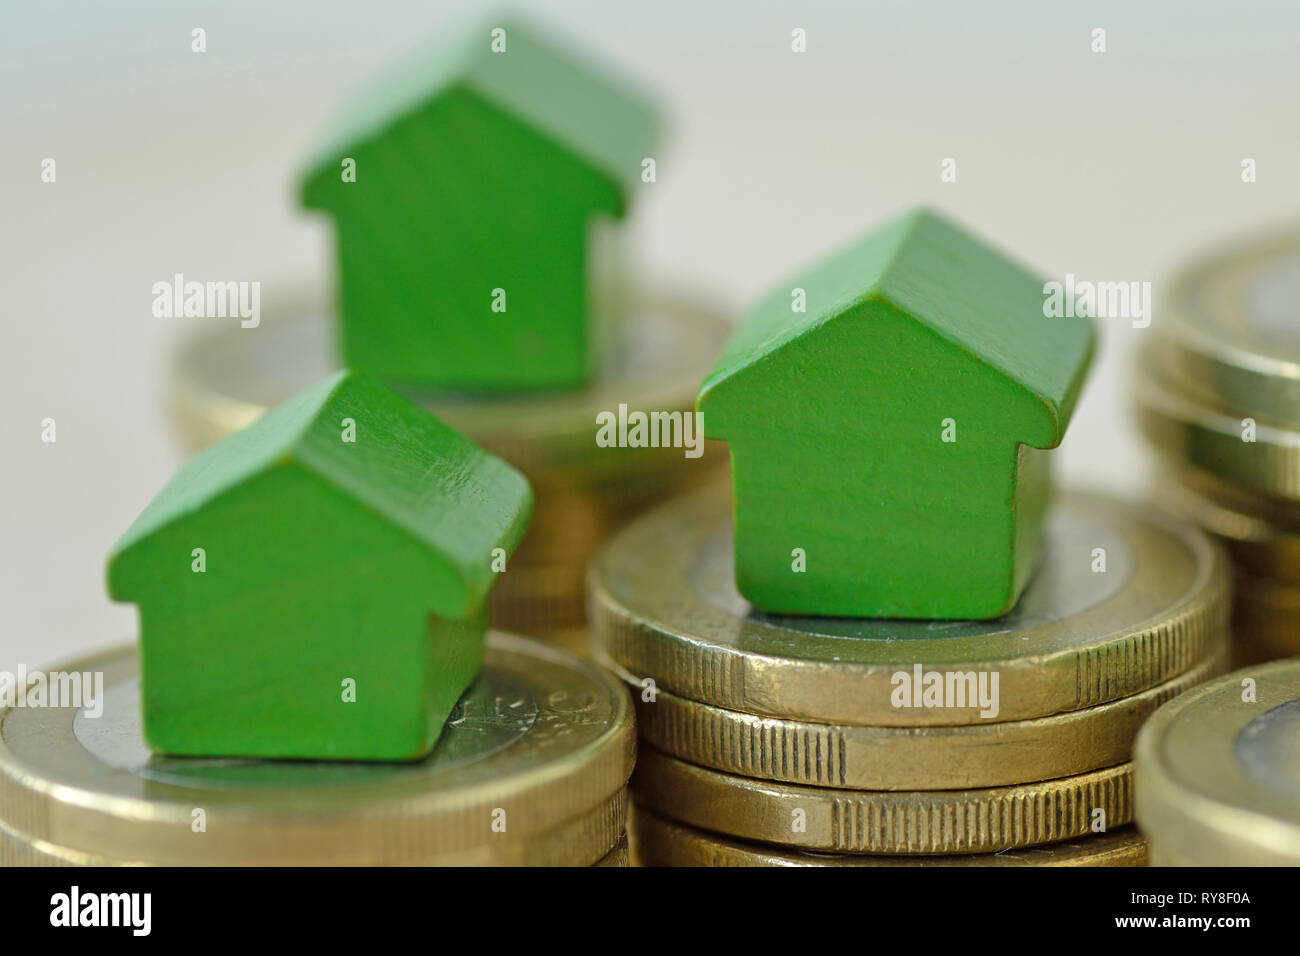 Casas en miniatura verde sobre pilas de moneda - Concepto de inversiones inmobiliarias, hipotecas, seguros de hogar y de préstamo, eco-friendly house Foto de stock